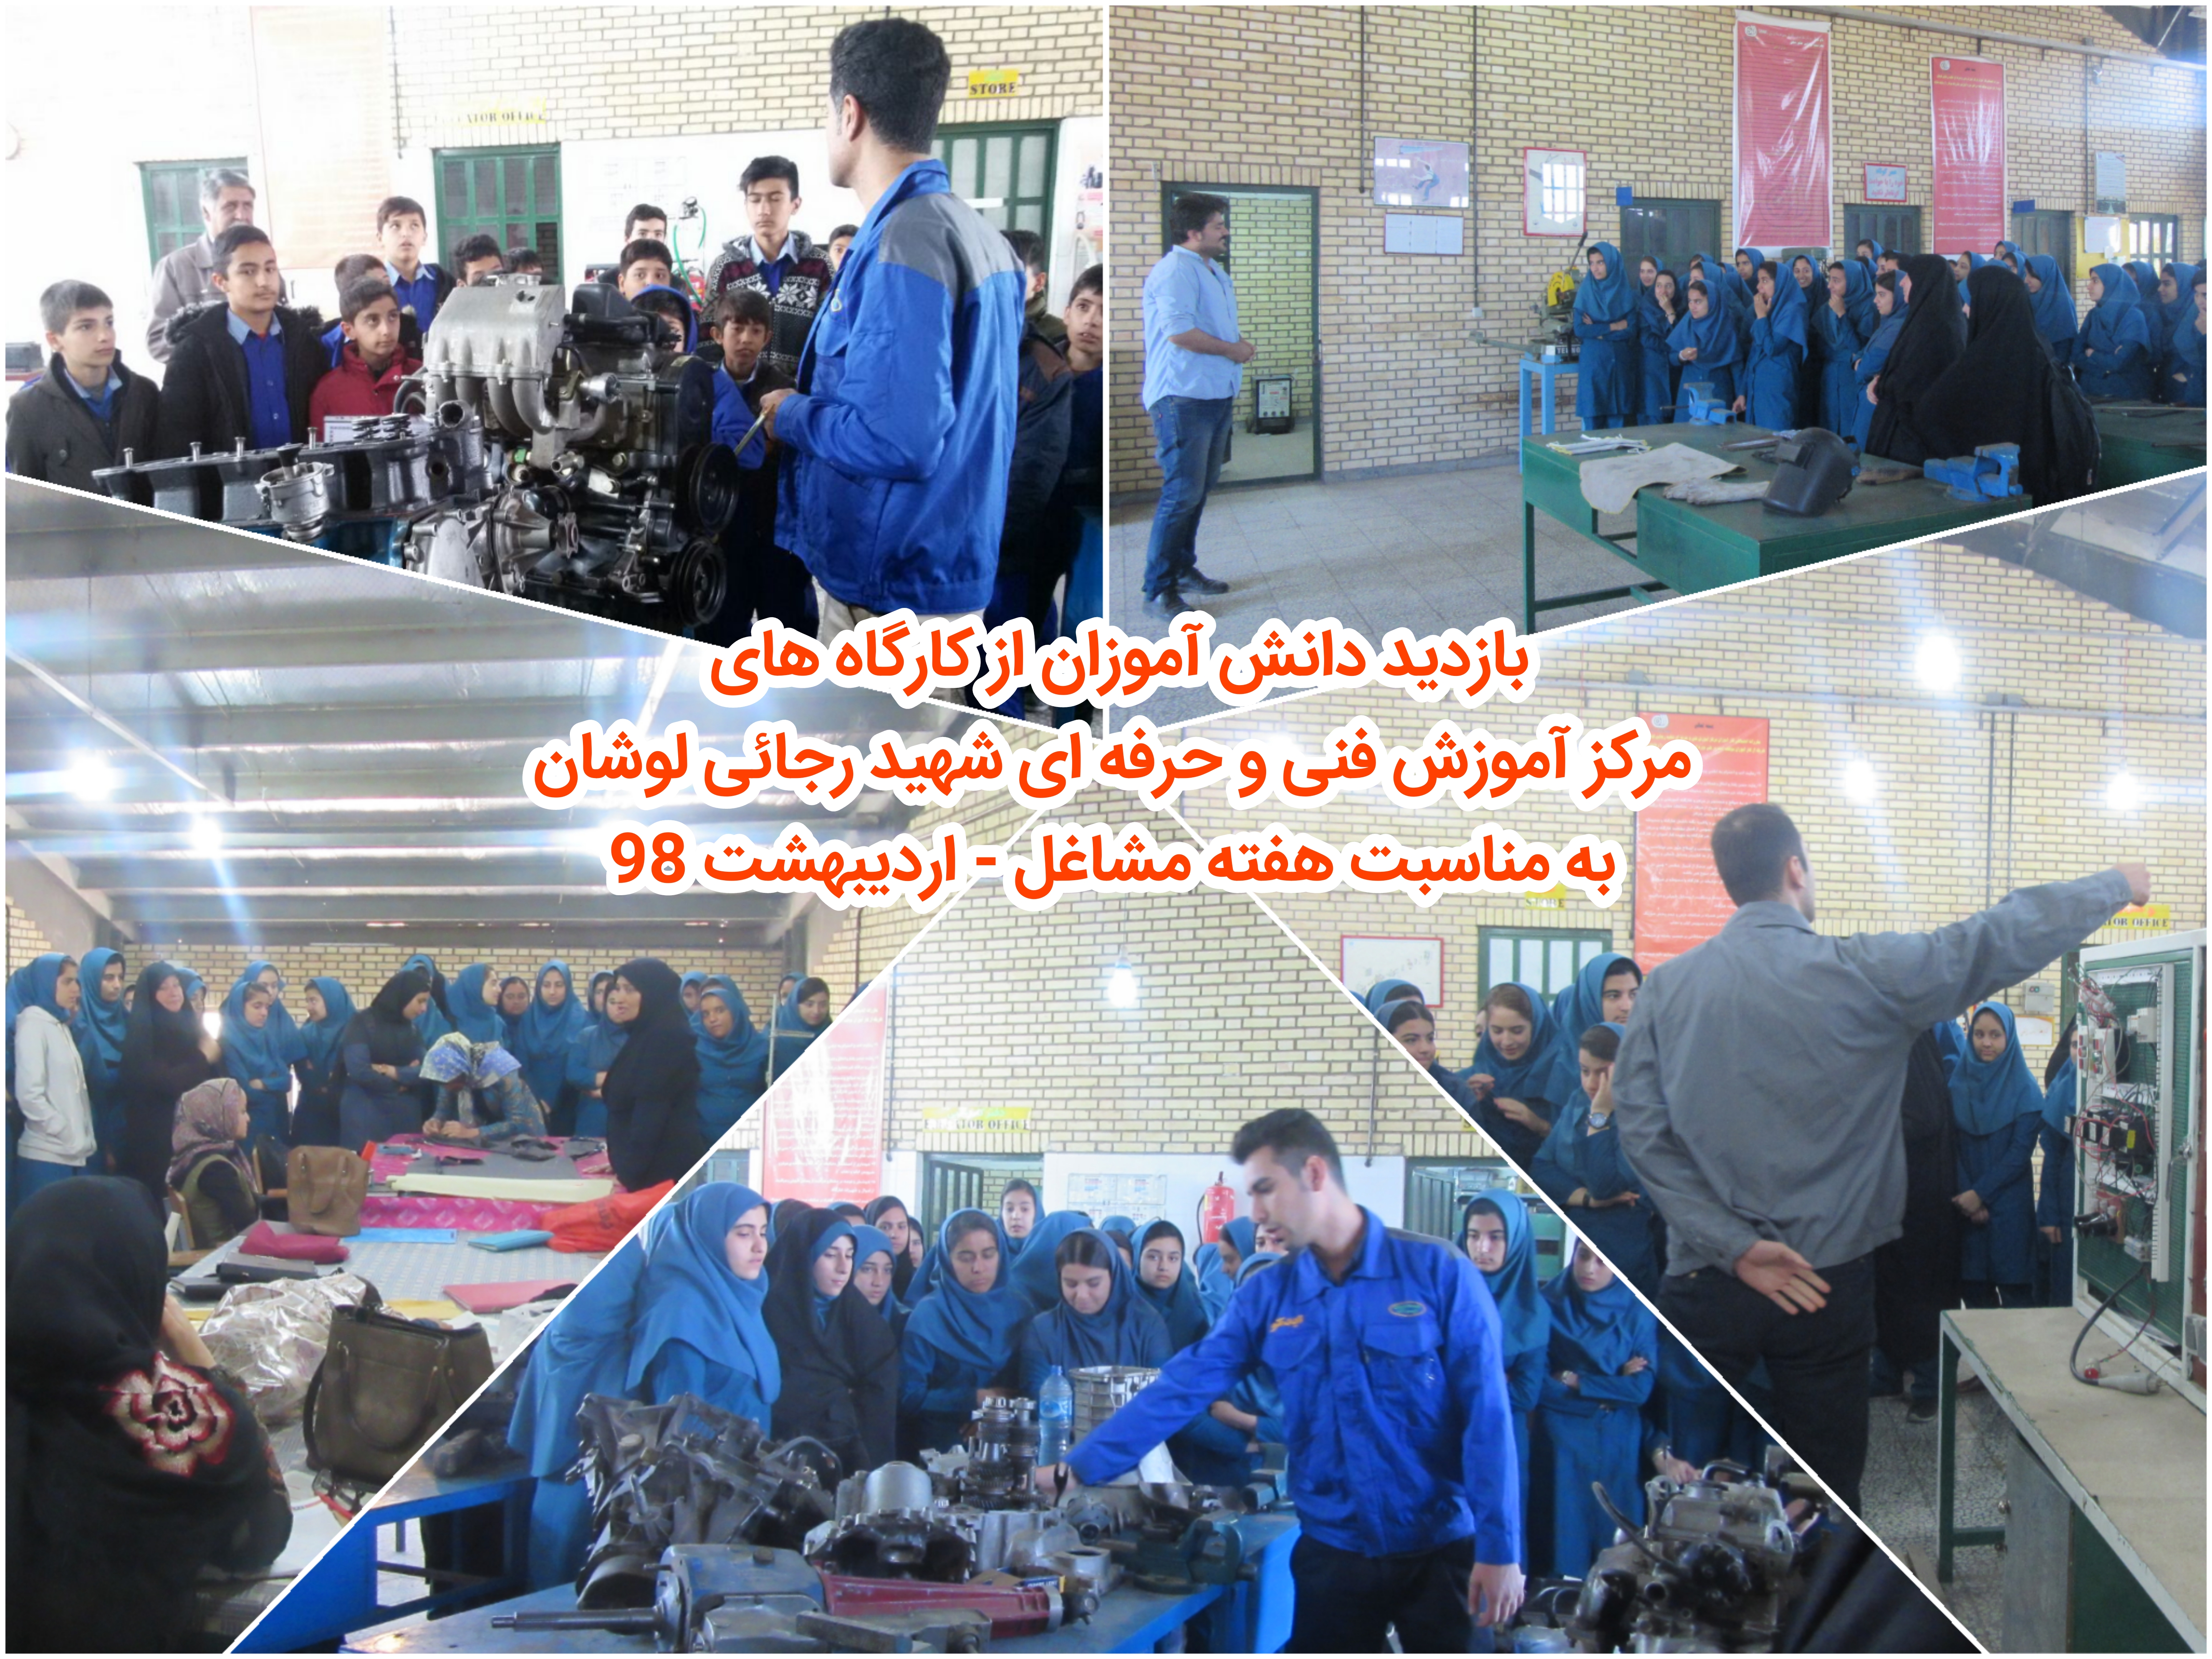 بازدید دانش آموزان از مرکز شهید رجائی لوشان